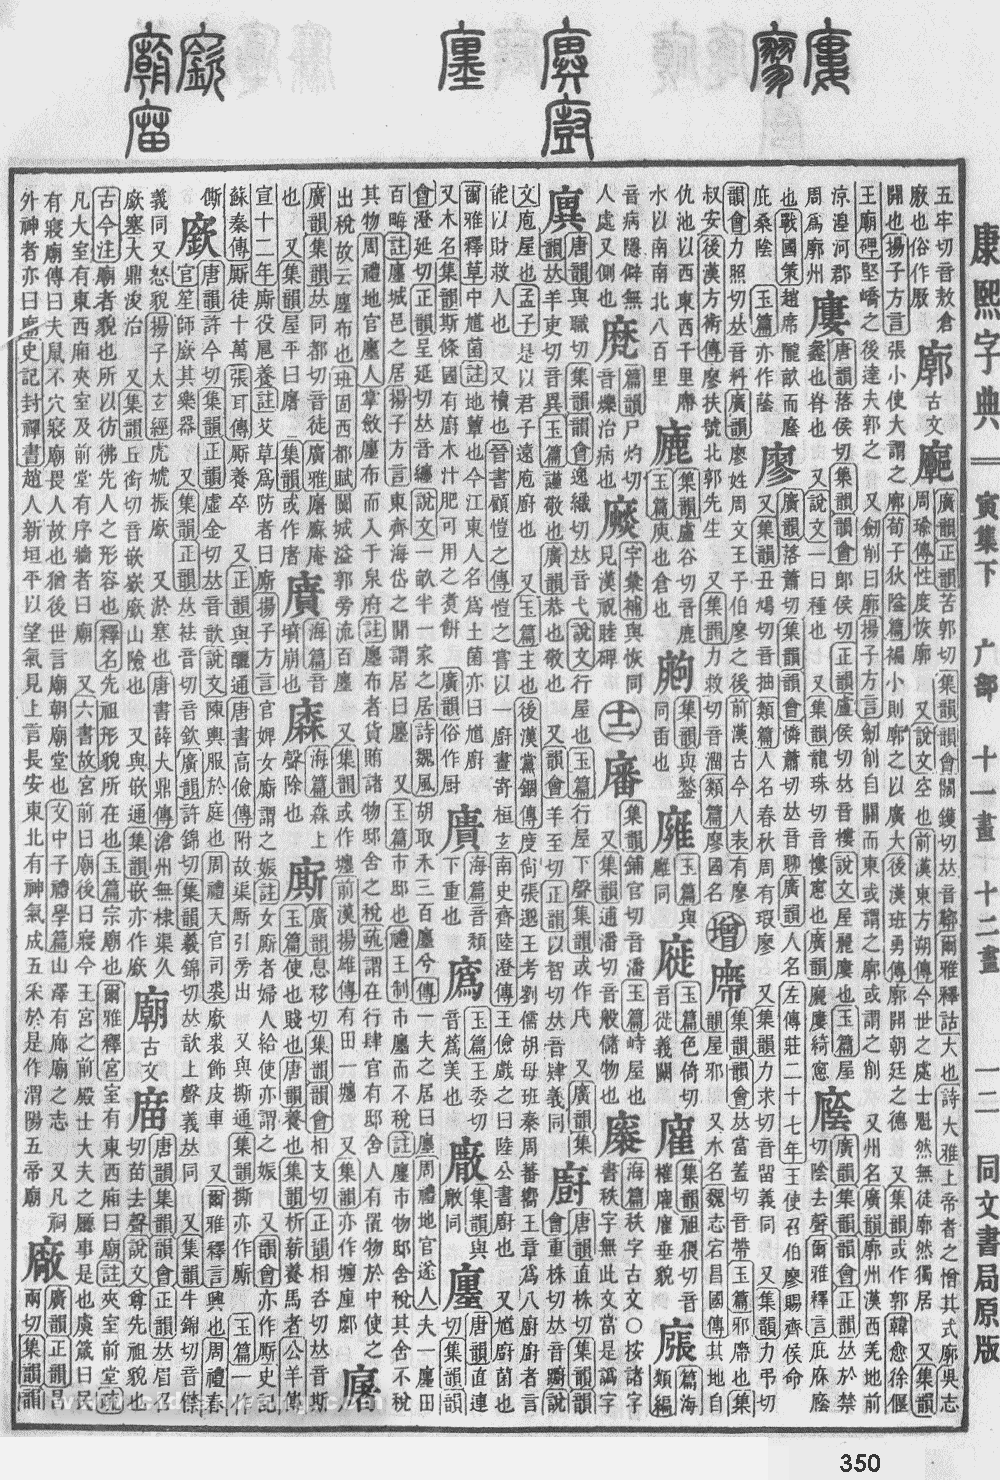 康熙字典掃描版第350頁